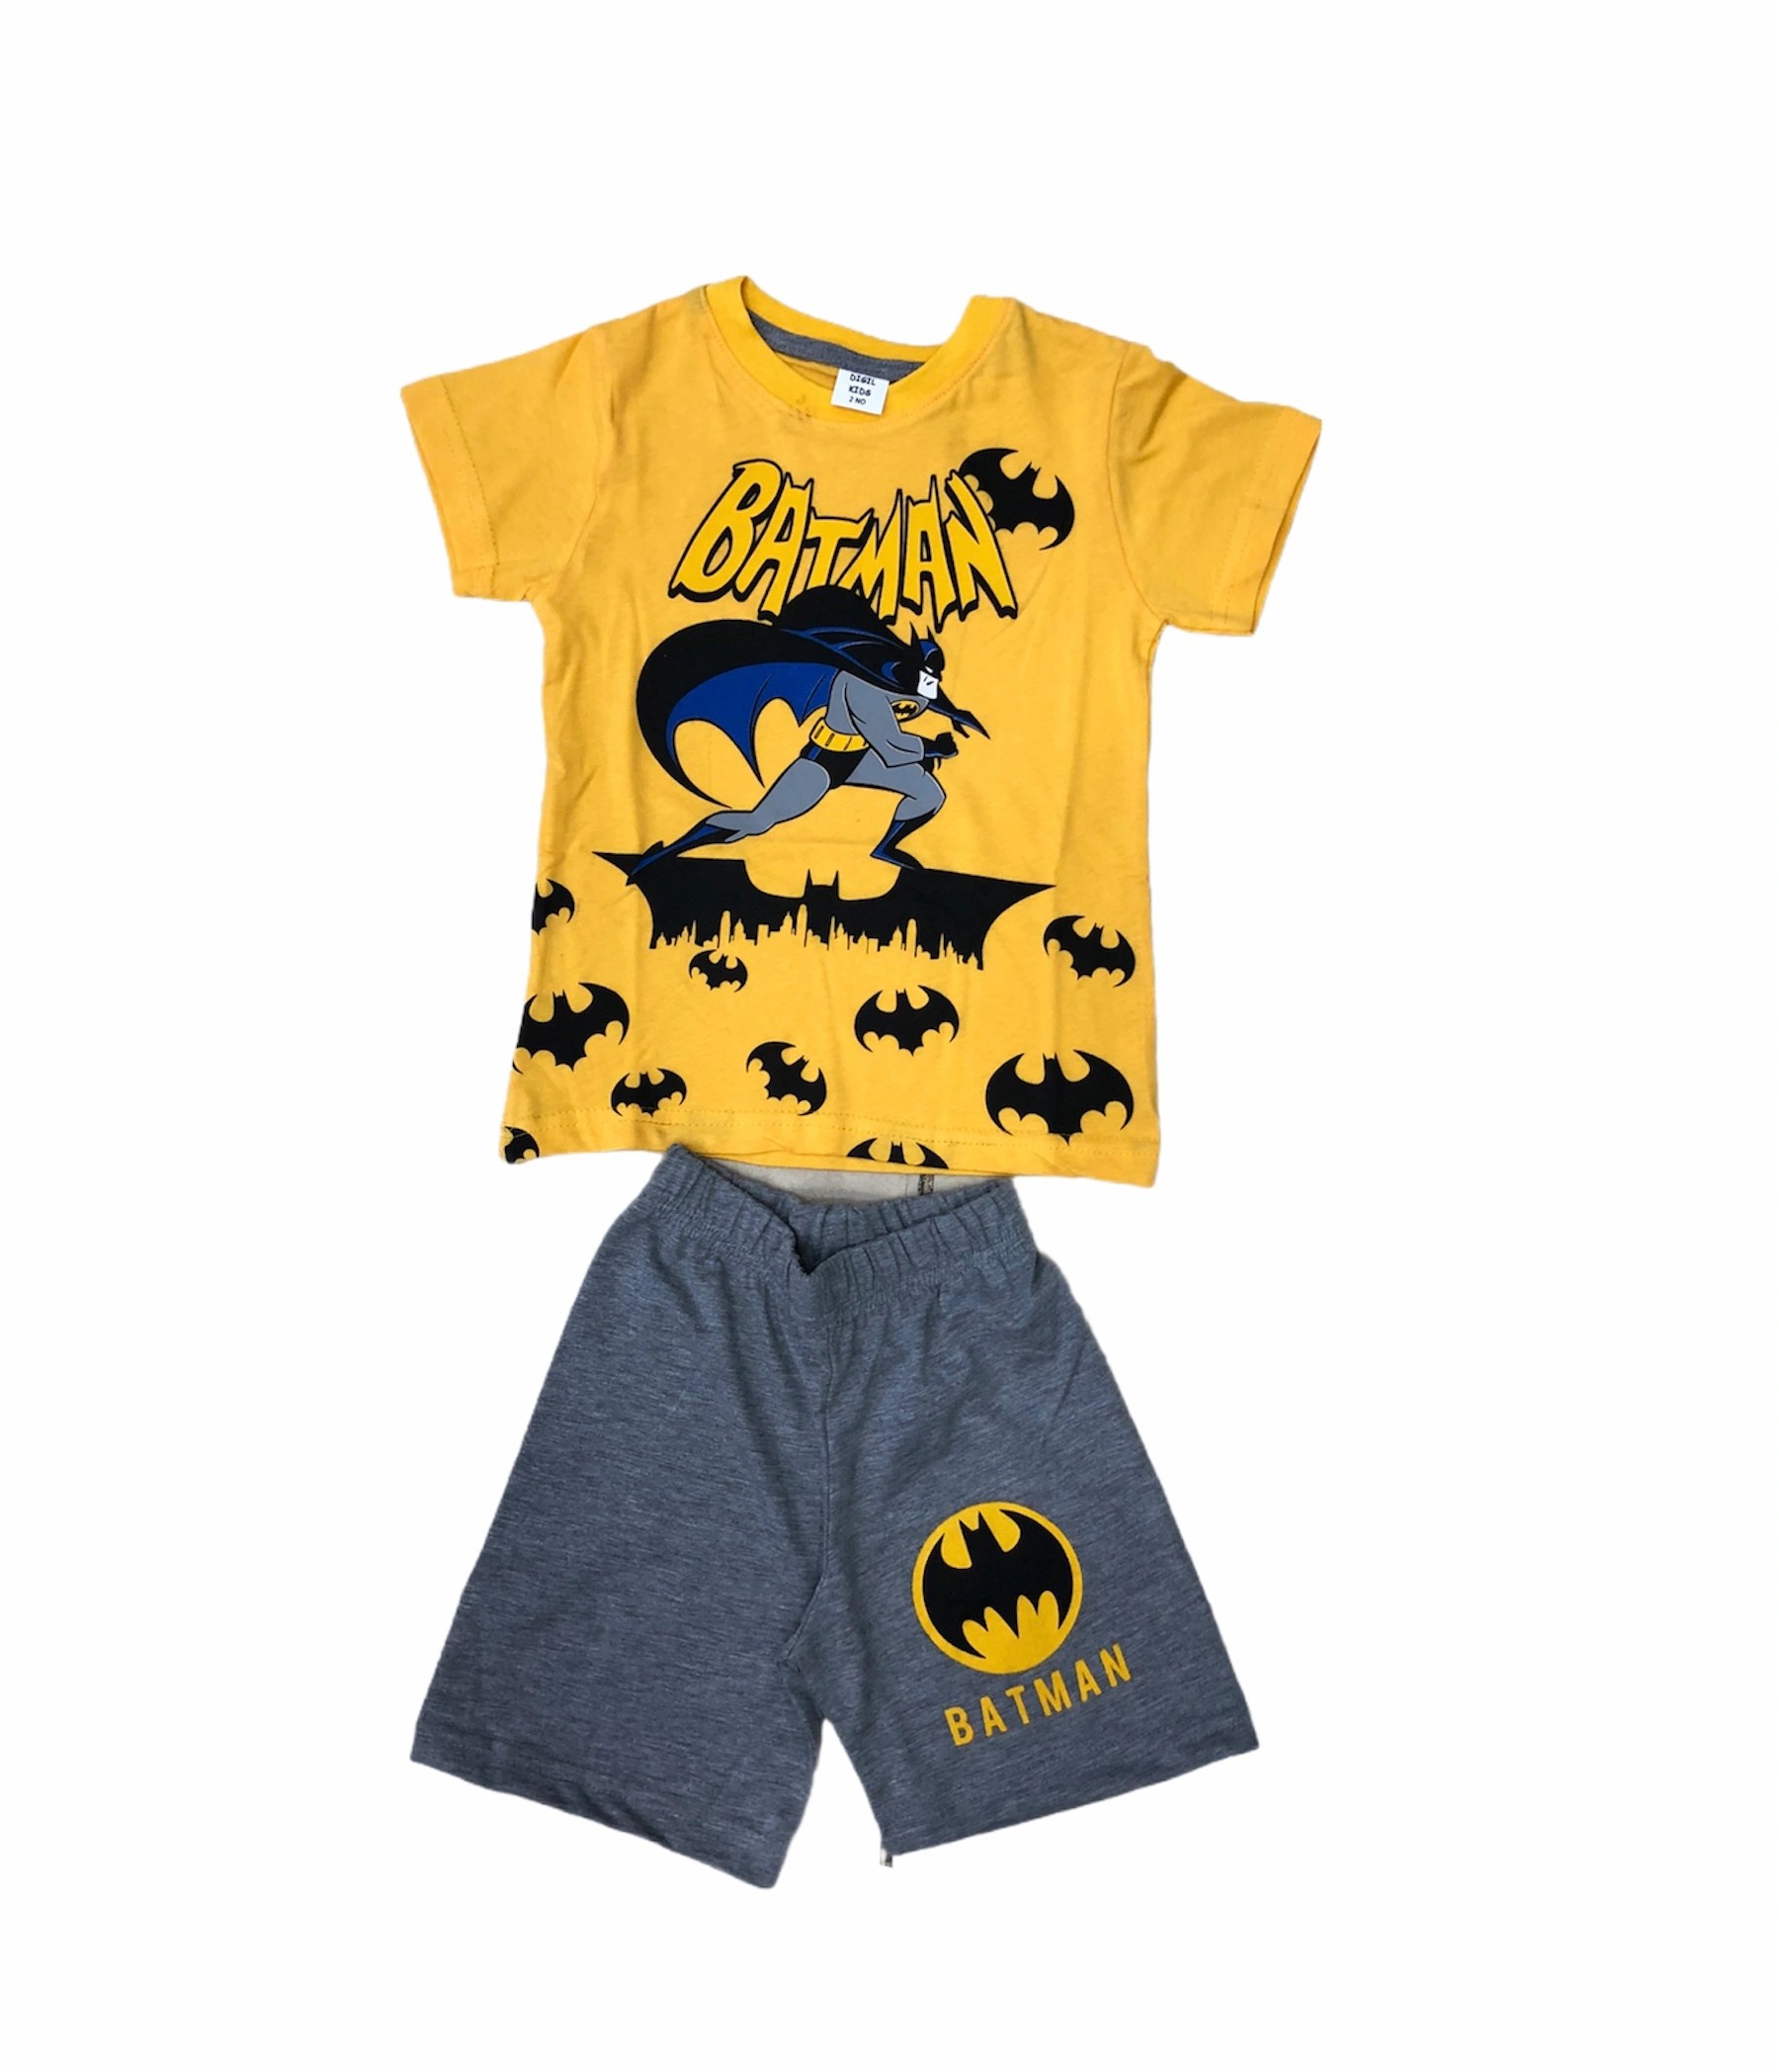 Soie Cotton Erkek Çocuk Batman Baskılı Şortlu Penye Takım  - Sarı-Antrasit - 100009030